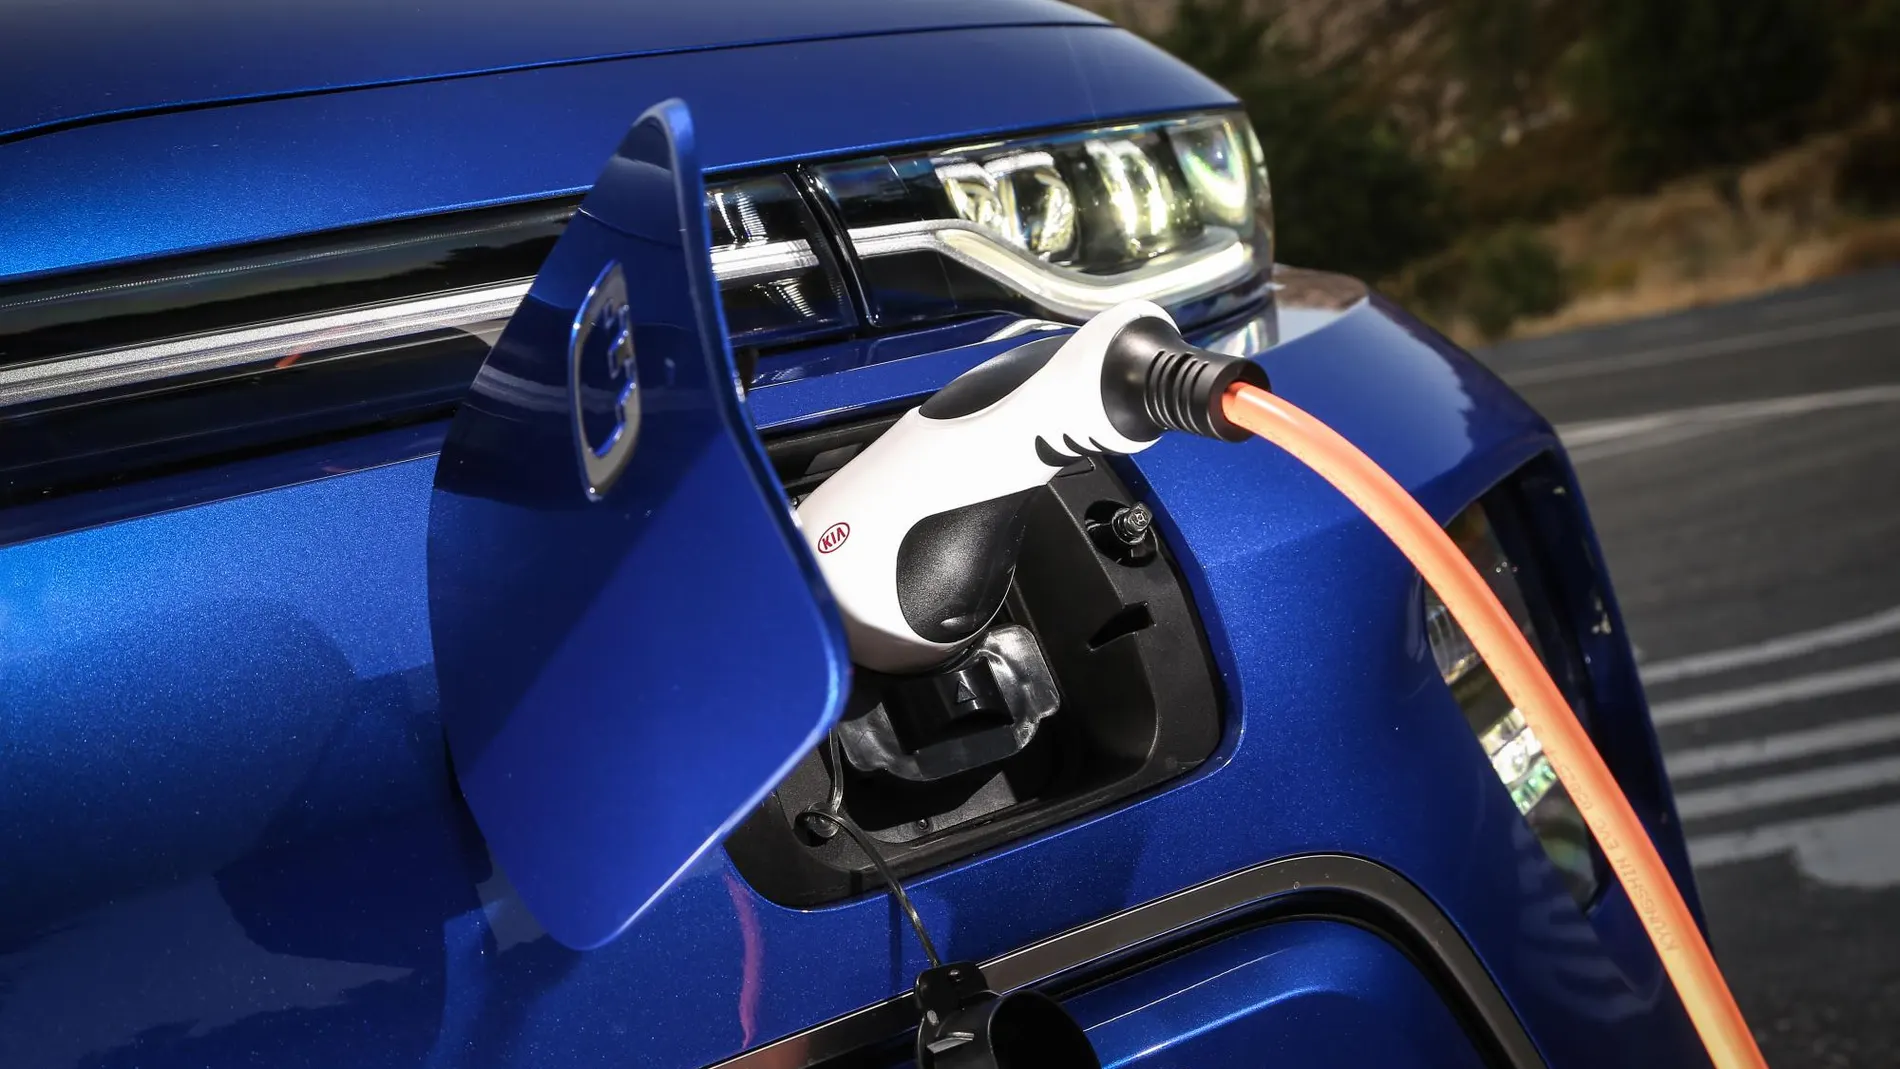 Las ventas de Kia aumentan en Europa gracias a sus modelos electrificados